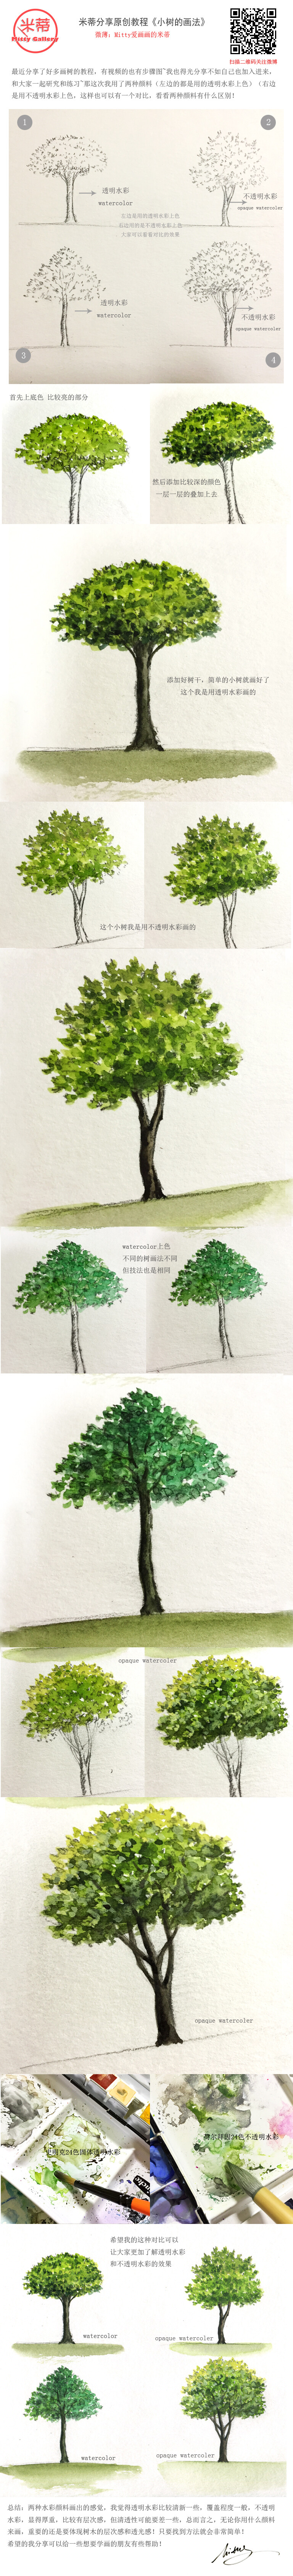 【米蒂Mitty分享原创教程】《小树的画法》最近分享了很多小树的画法，有视频有步骤图，我觉得自己也要加入其中，不仅仅只是分享而且一起学习和研究其中的方法~这次我用了2种颜料来上色，左边的是透明水彩，右边的是不透明水彩，这样也可以对颜料有兴趣的朋友们有一个对比！